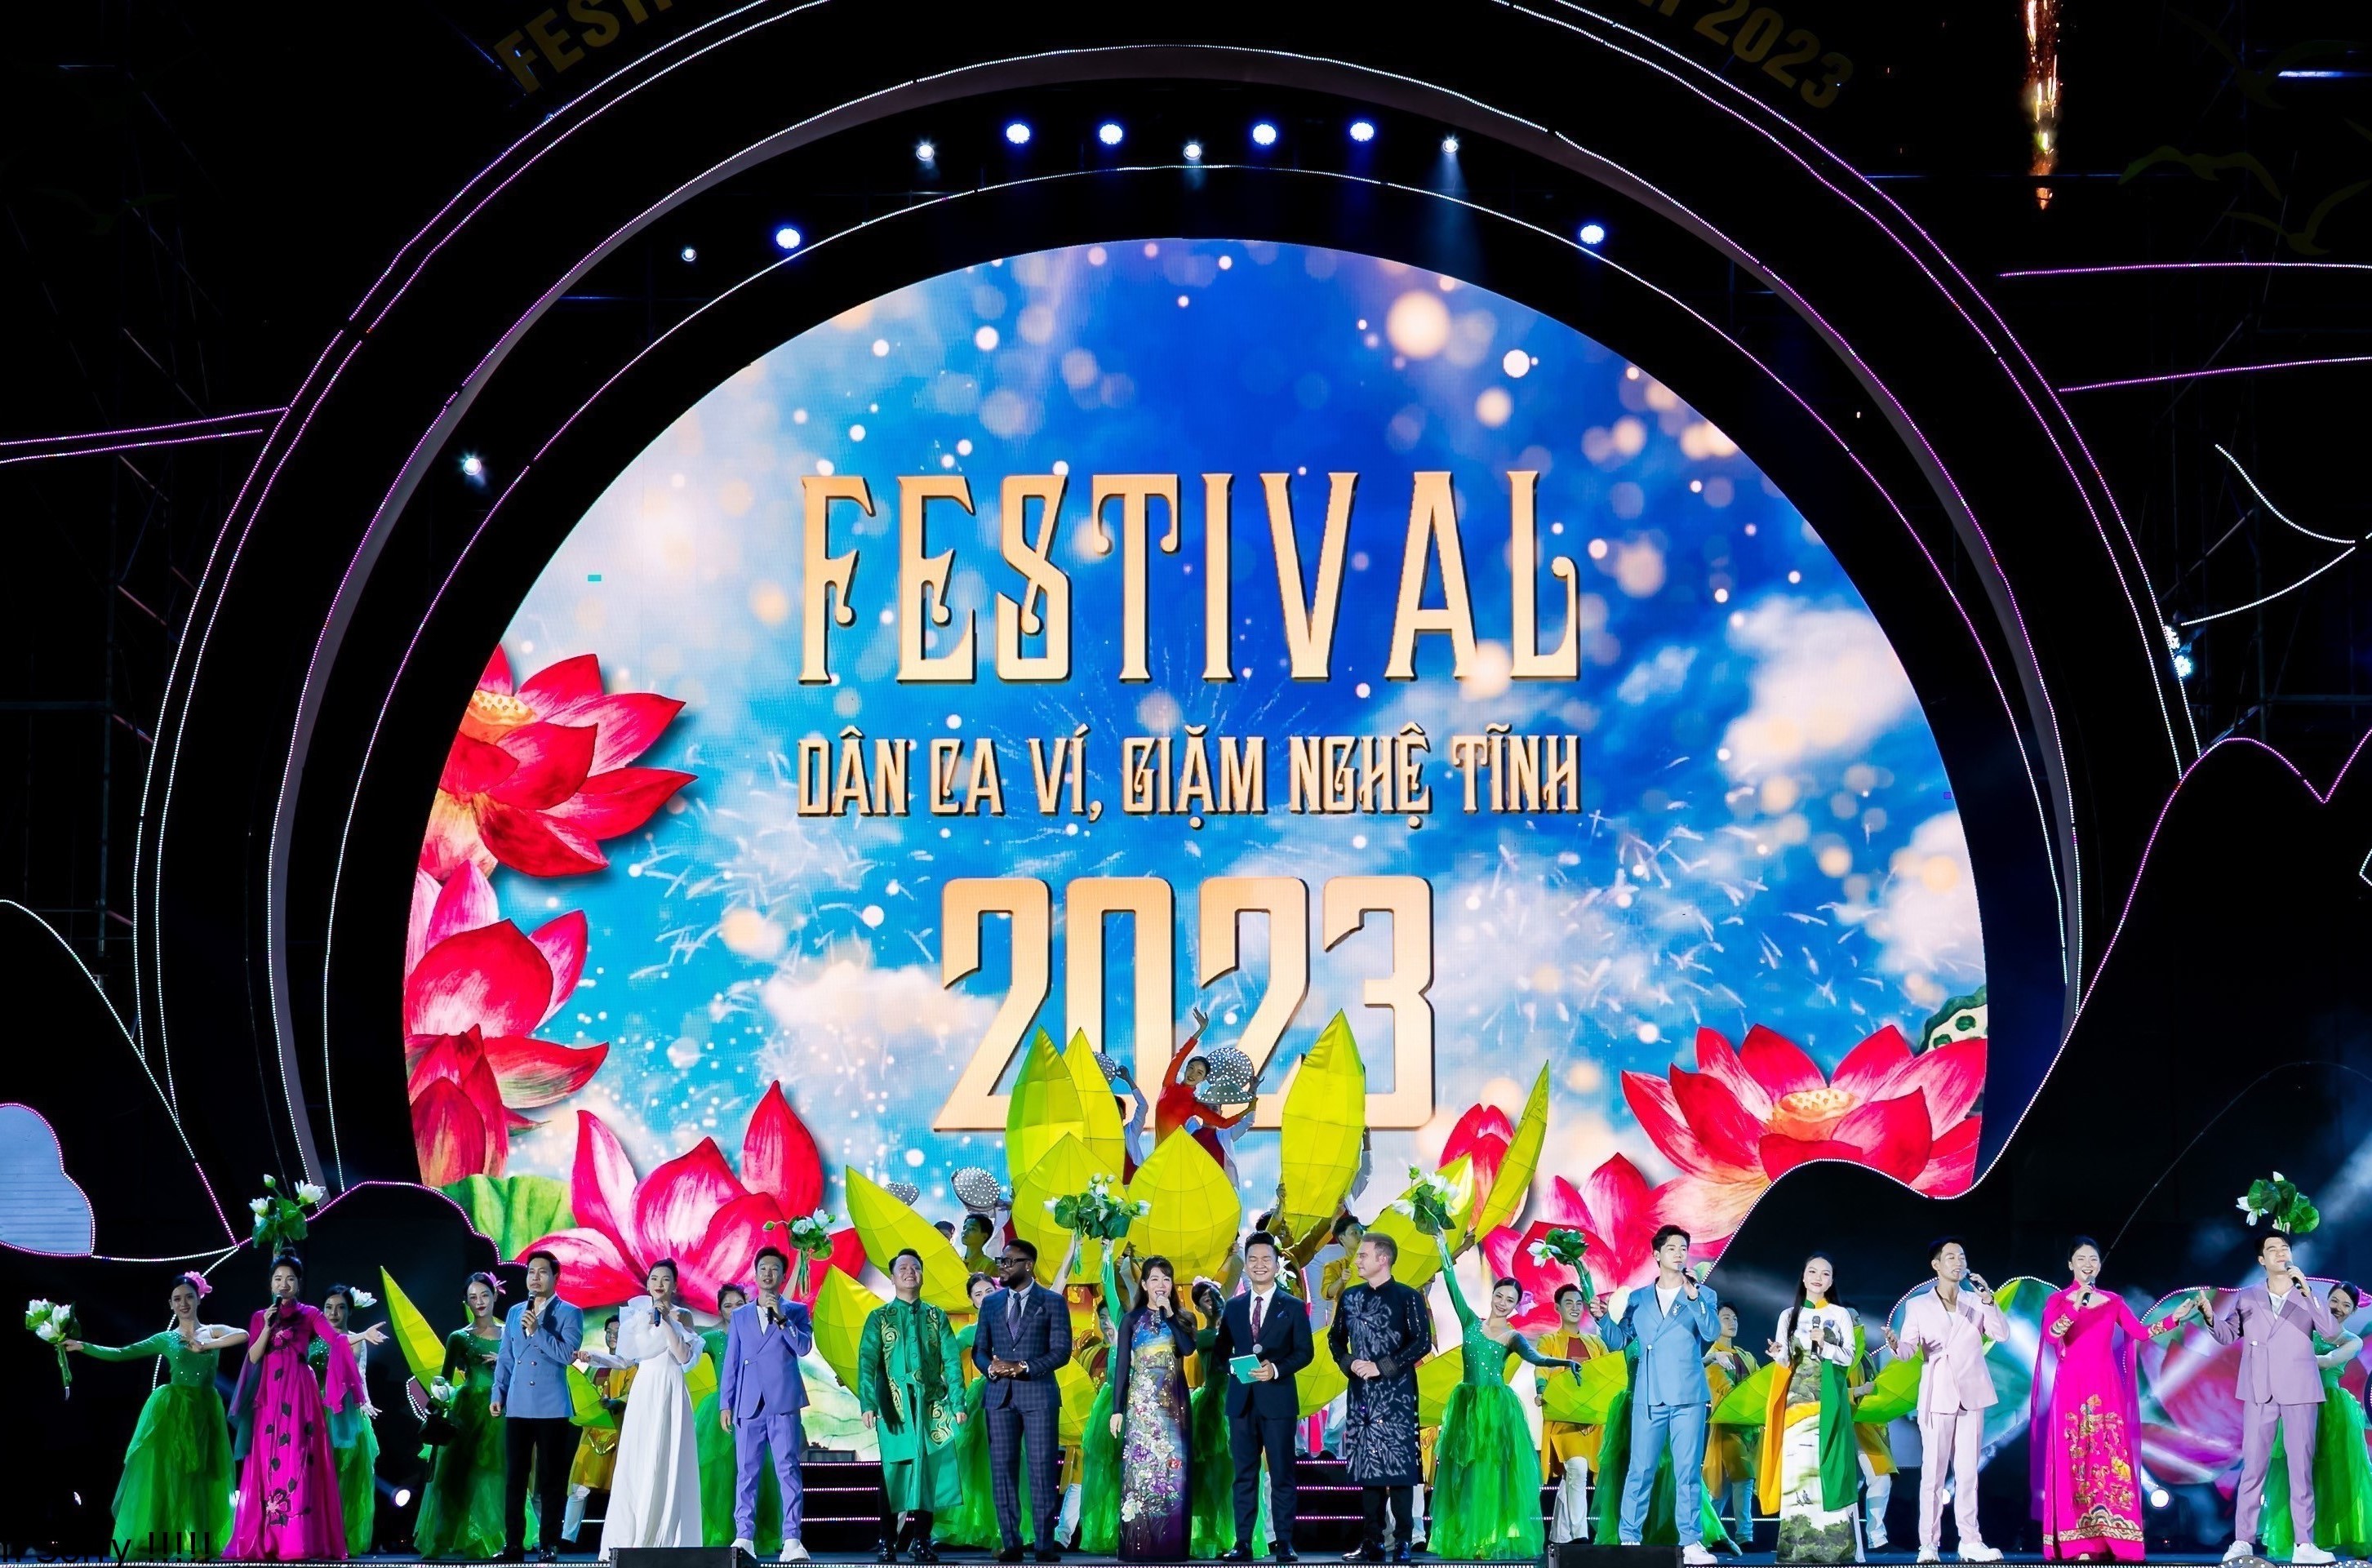 Ấn tượng đêm khai mạc Festival Dân ca Ví, Giặm Nghệ Tĩnh 2023